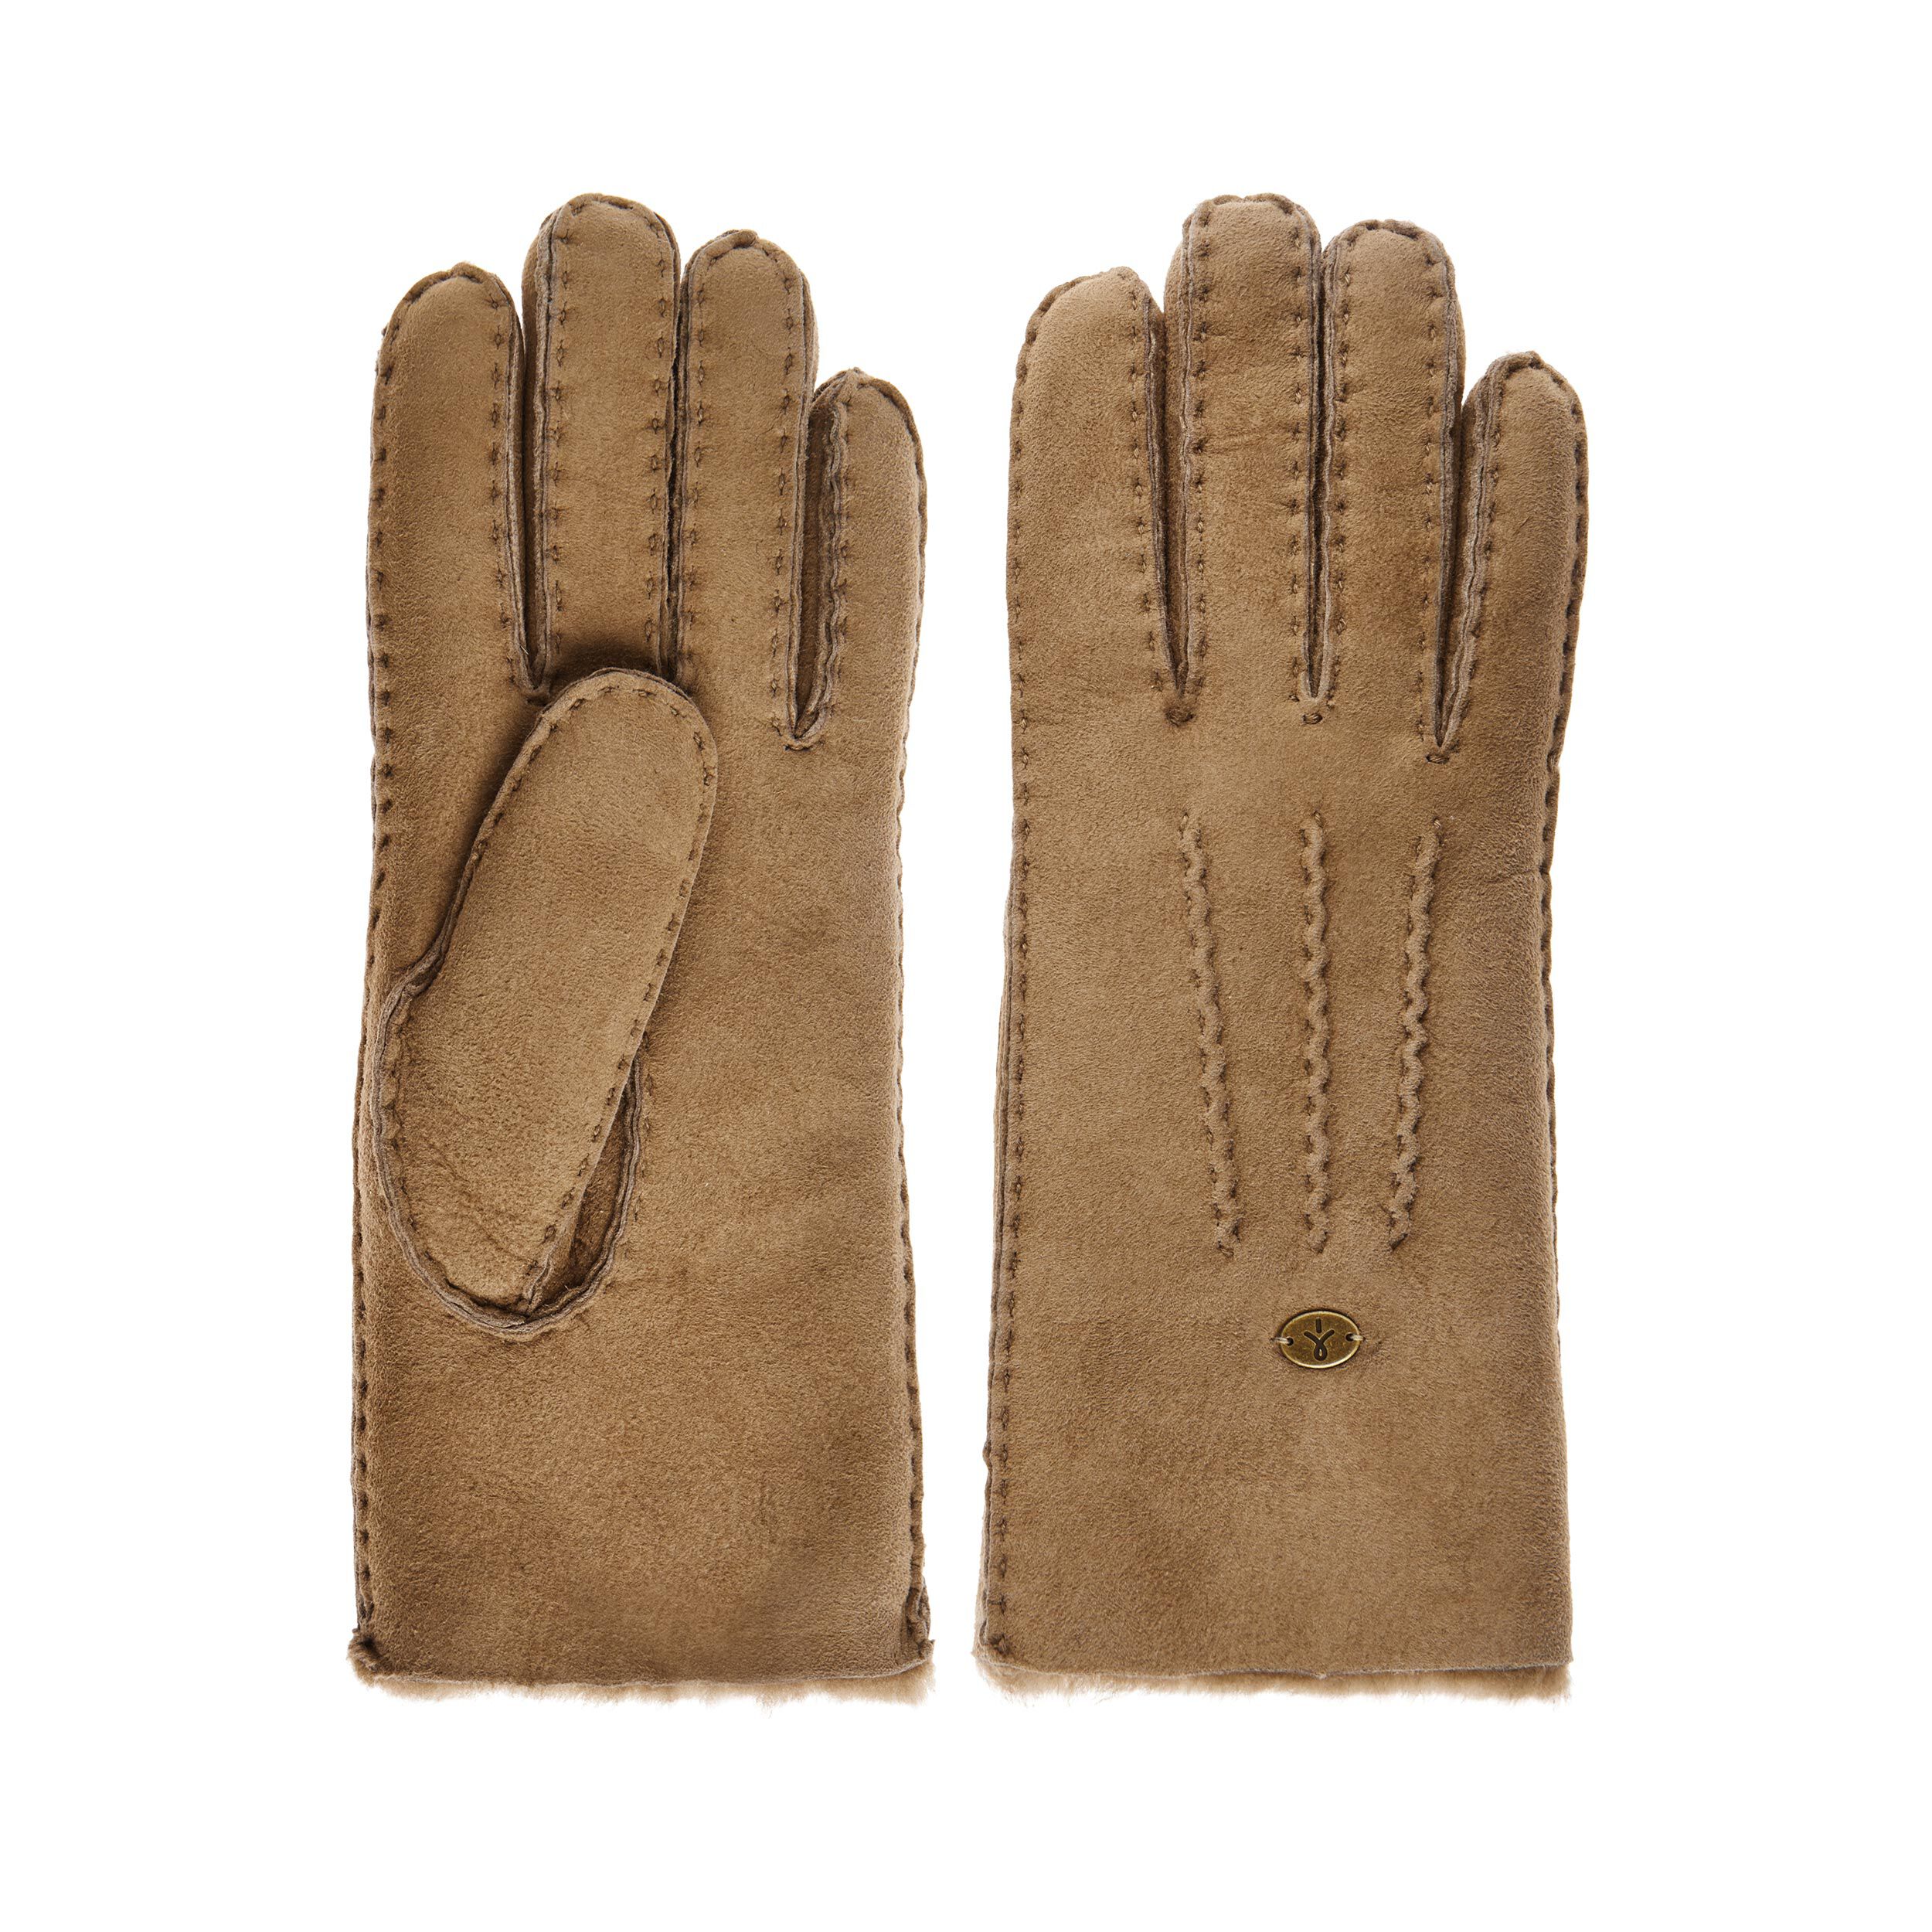 Beech Forest Gloves